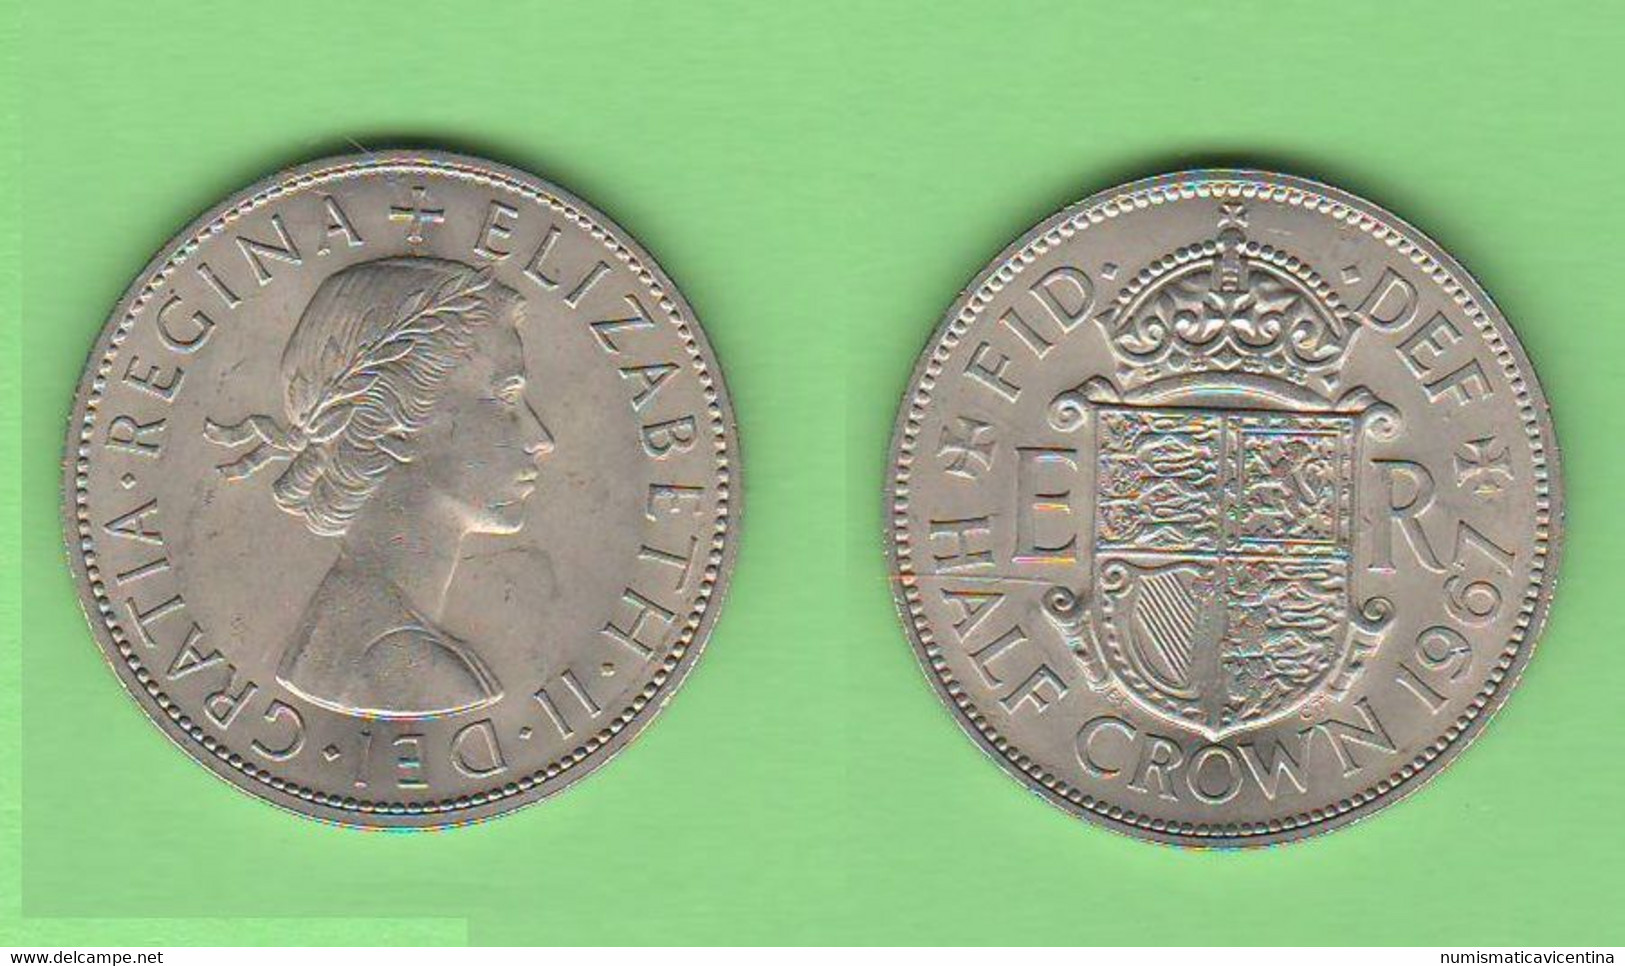 Great Britain 1/2 Half CROWN 1967 Inghilterra Great Britain UK Nickel Coin - K. 1/2 Crown